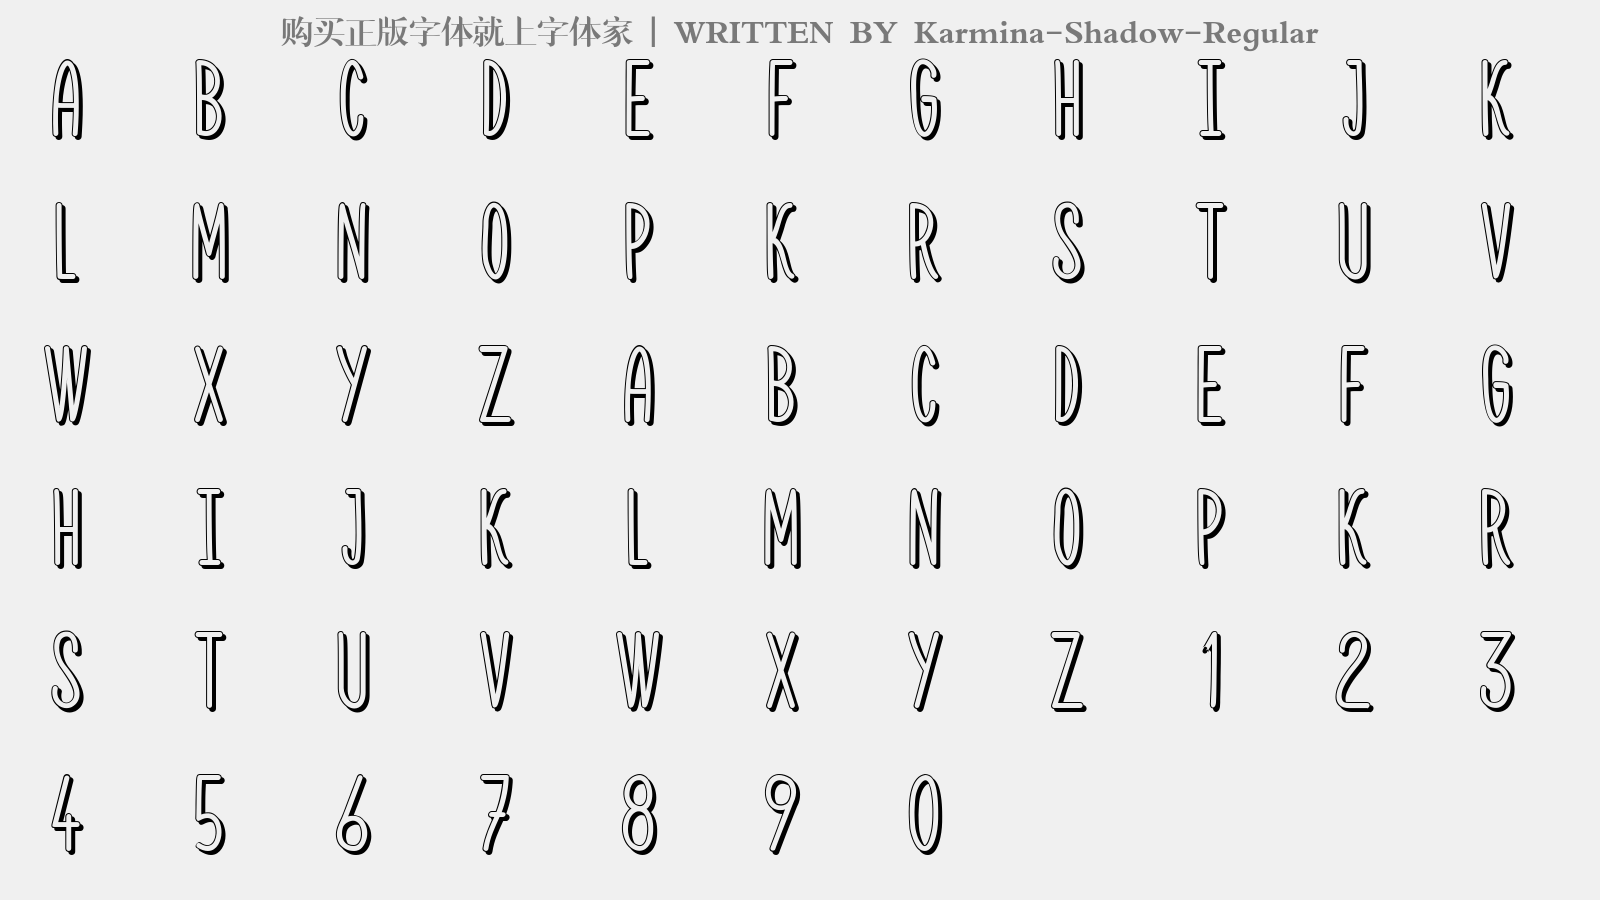 Karmina-Shadow-Regular - 大写字母/小写字母/数字